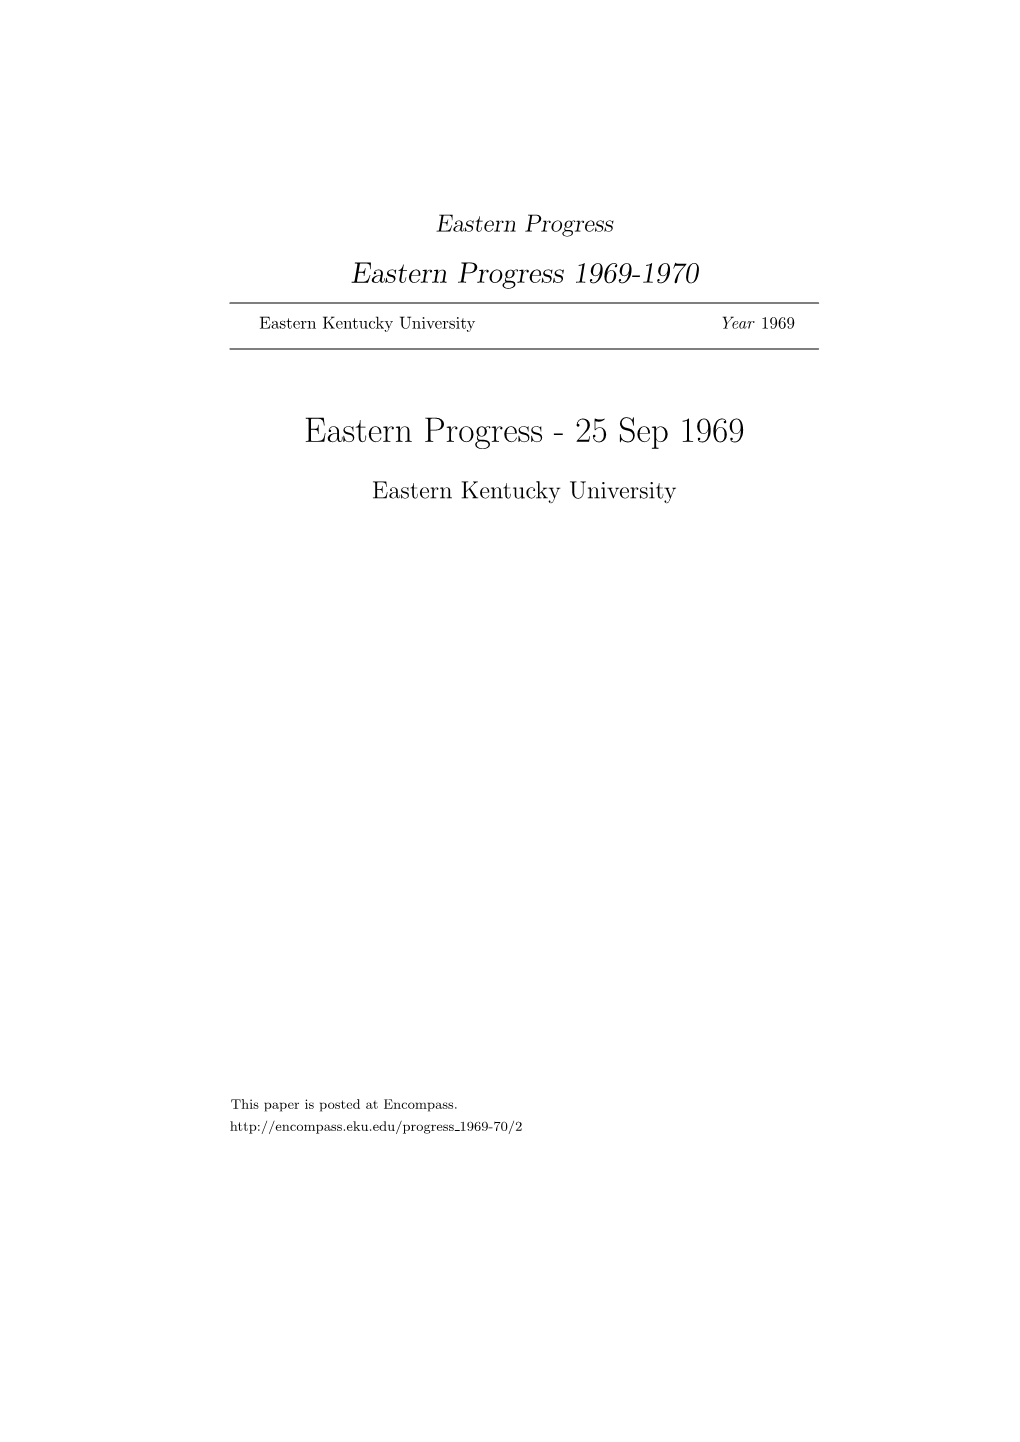 Eastern Progress Eastern Progress 1969-1970